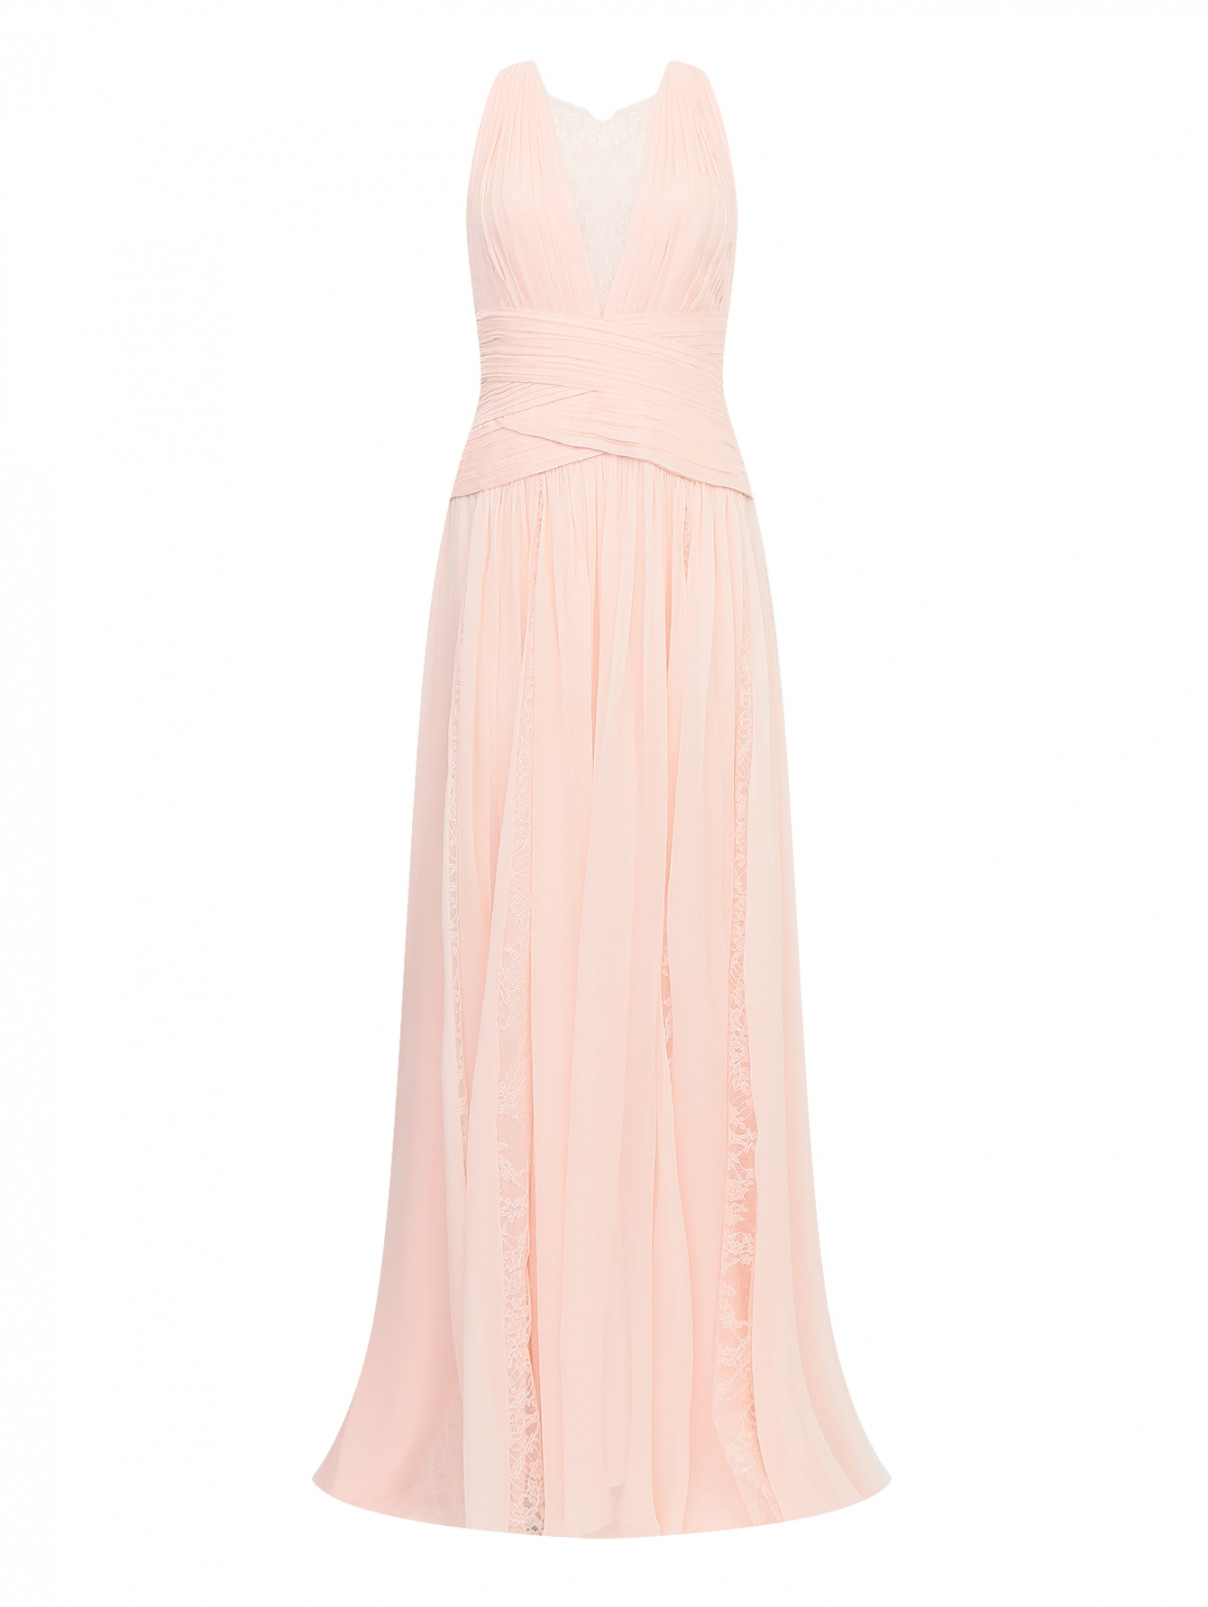 Платье-макси из шелка с кружевной отделкой Zuhair Murad  –  Общий вид  – Цвет:  Розовый